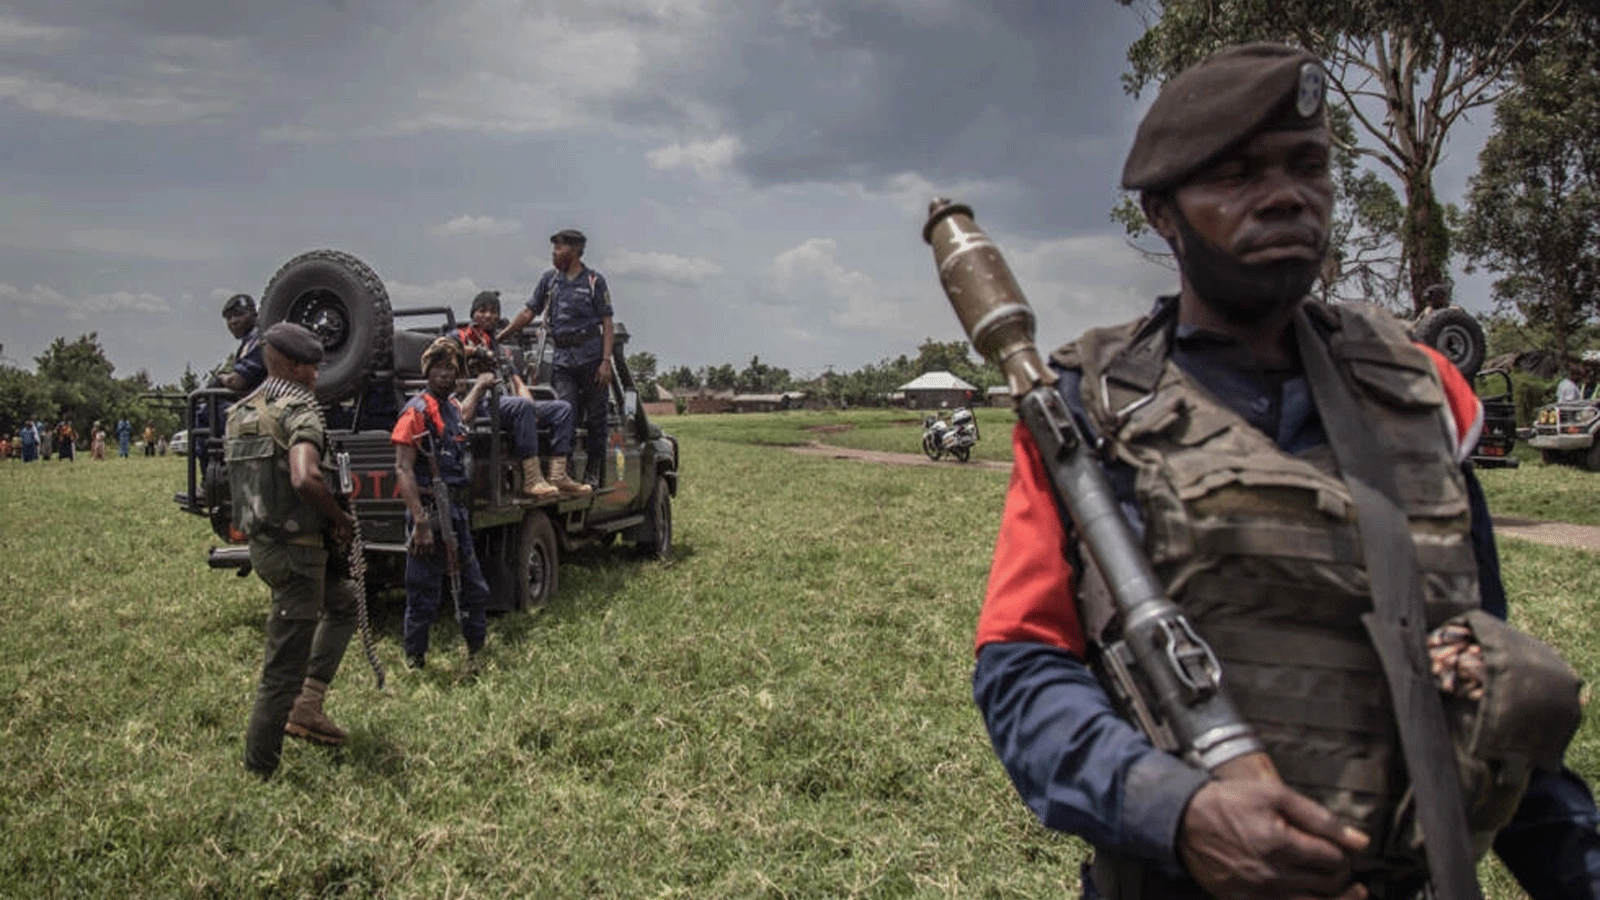 جنود من القوات المسلحة لجمهورية الكونغو الديمقراطية يقومون بدورية أمنية حول مطار كيوانجا بعد أيام من اشتباكات مع متمردي حركة 23 مارس في روتشورو بشرق جمهورية الكونغو الديمقراطية. 3 نيسان\ أبريل 2022